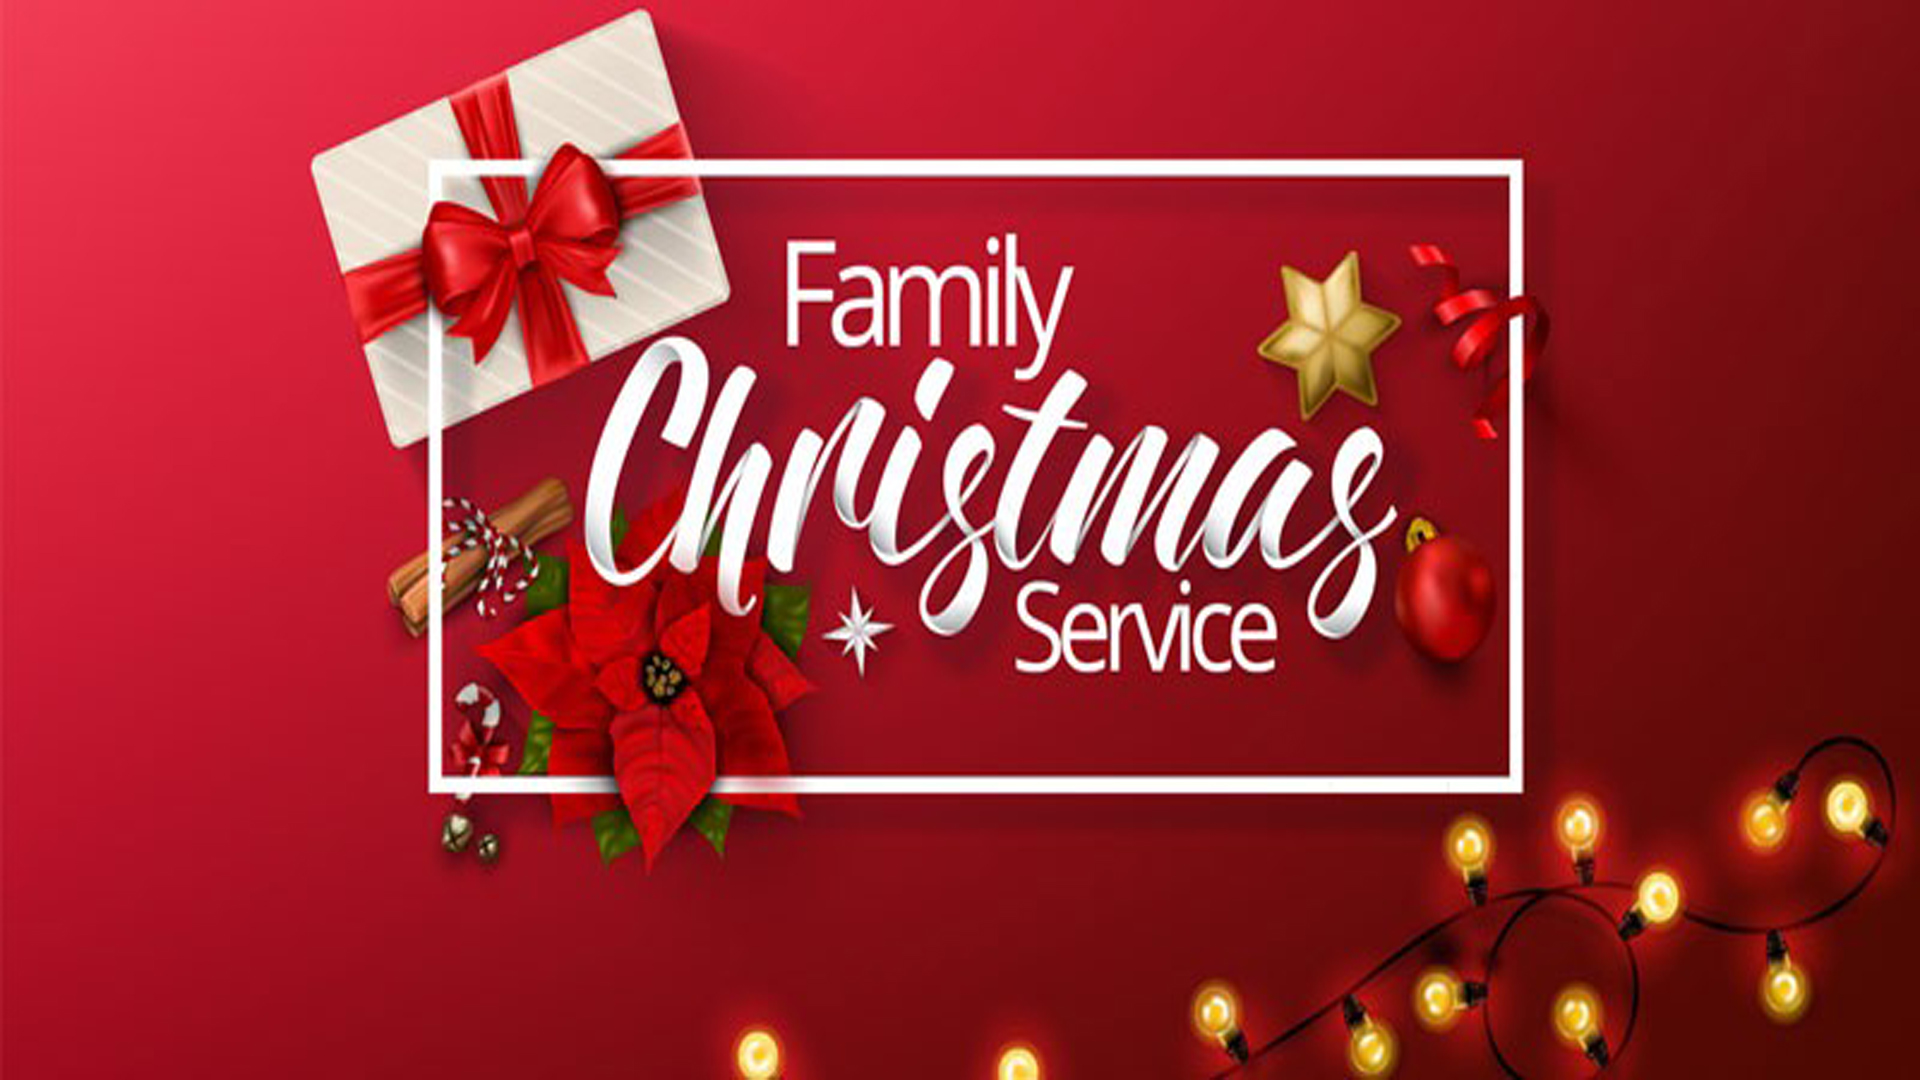 Christmas family carol service at Bethany Church